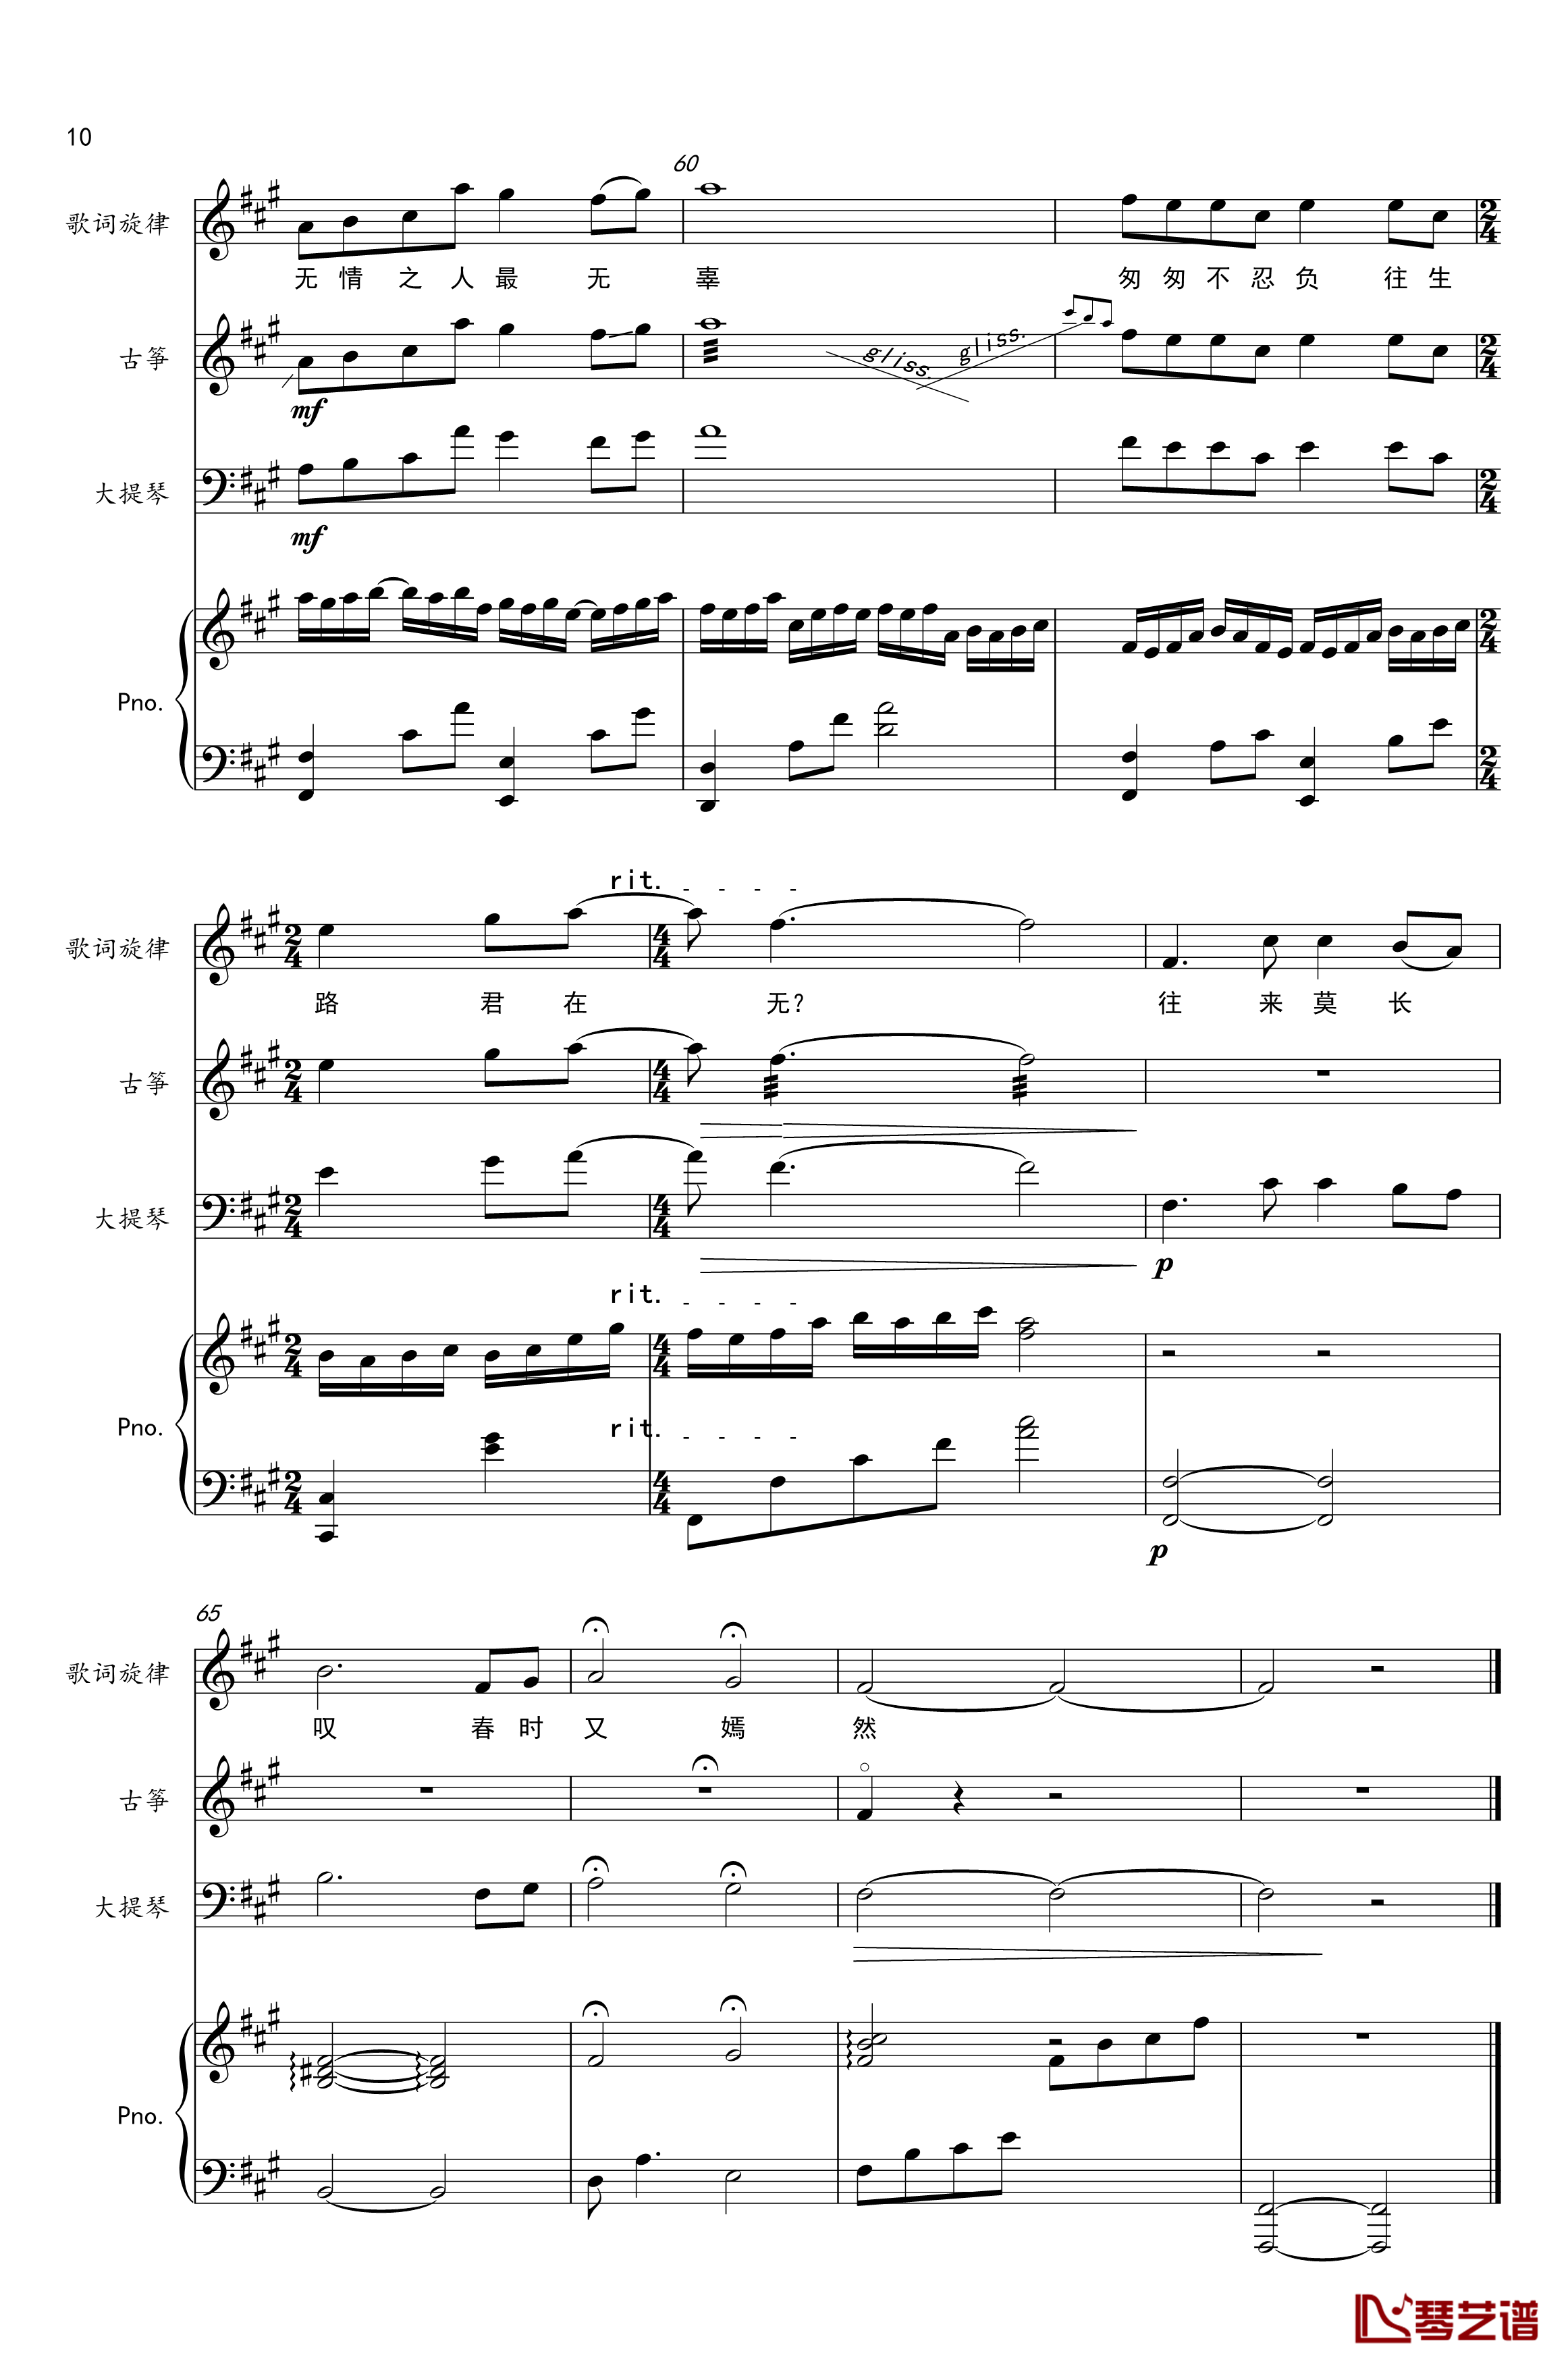 谓梦钢琴谱-古筝&大提琴&钢琴-樱の雪10